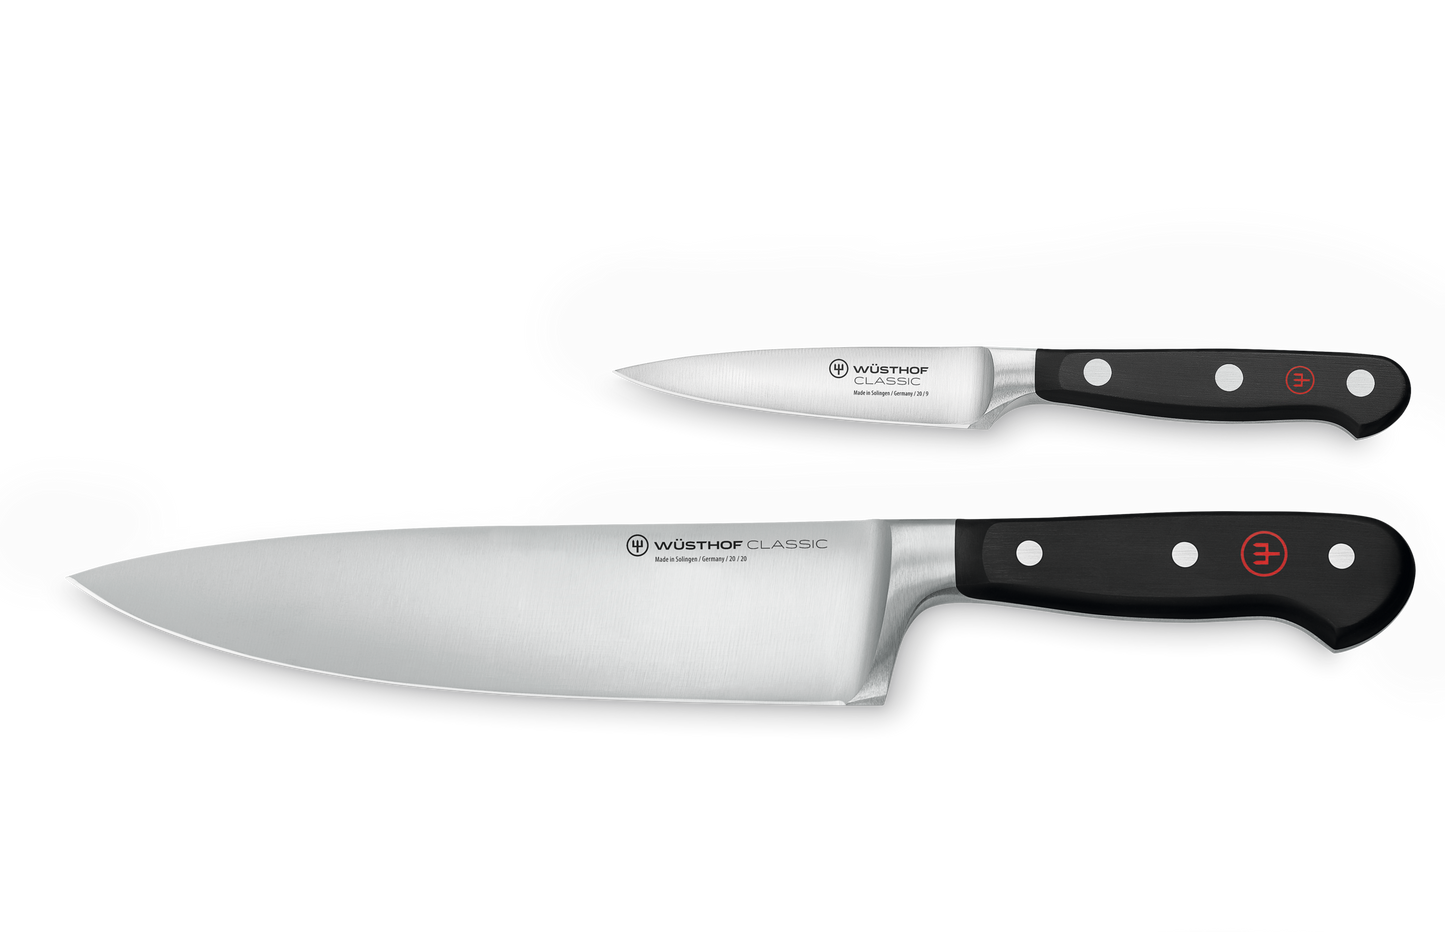 Messersatz mit 2 Messern